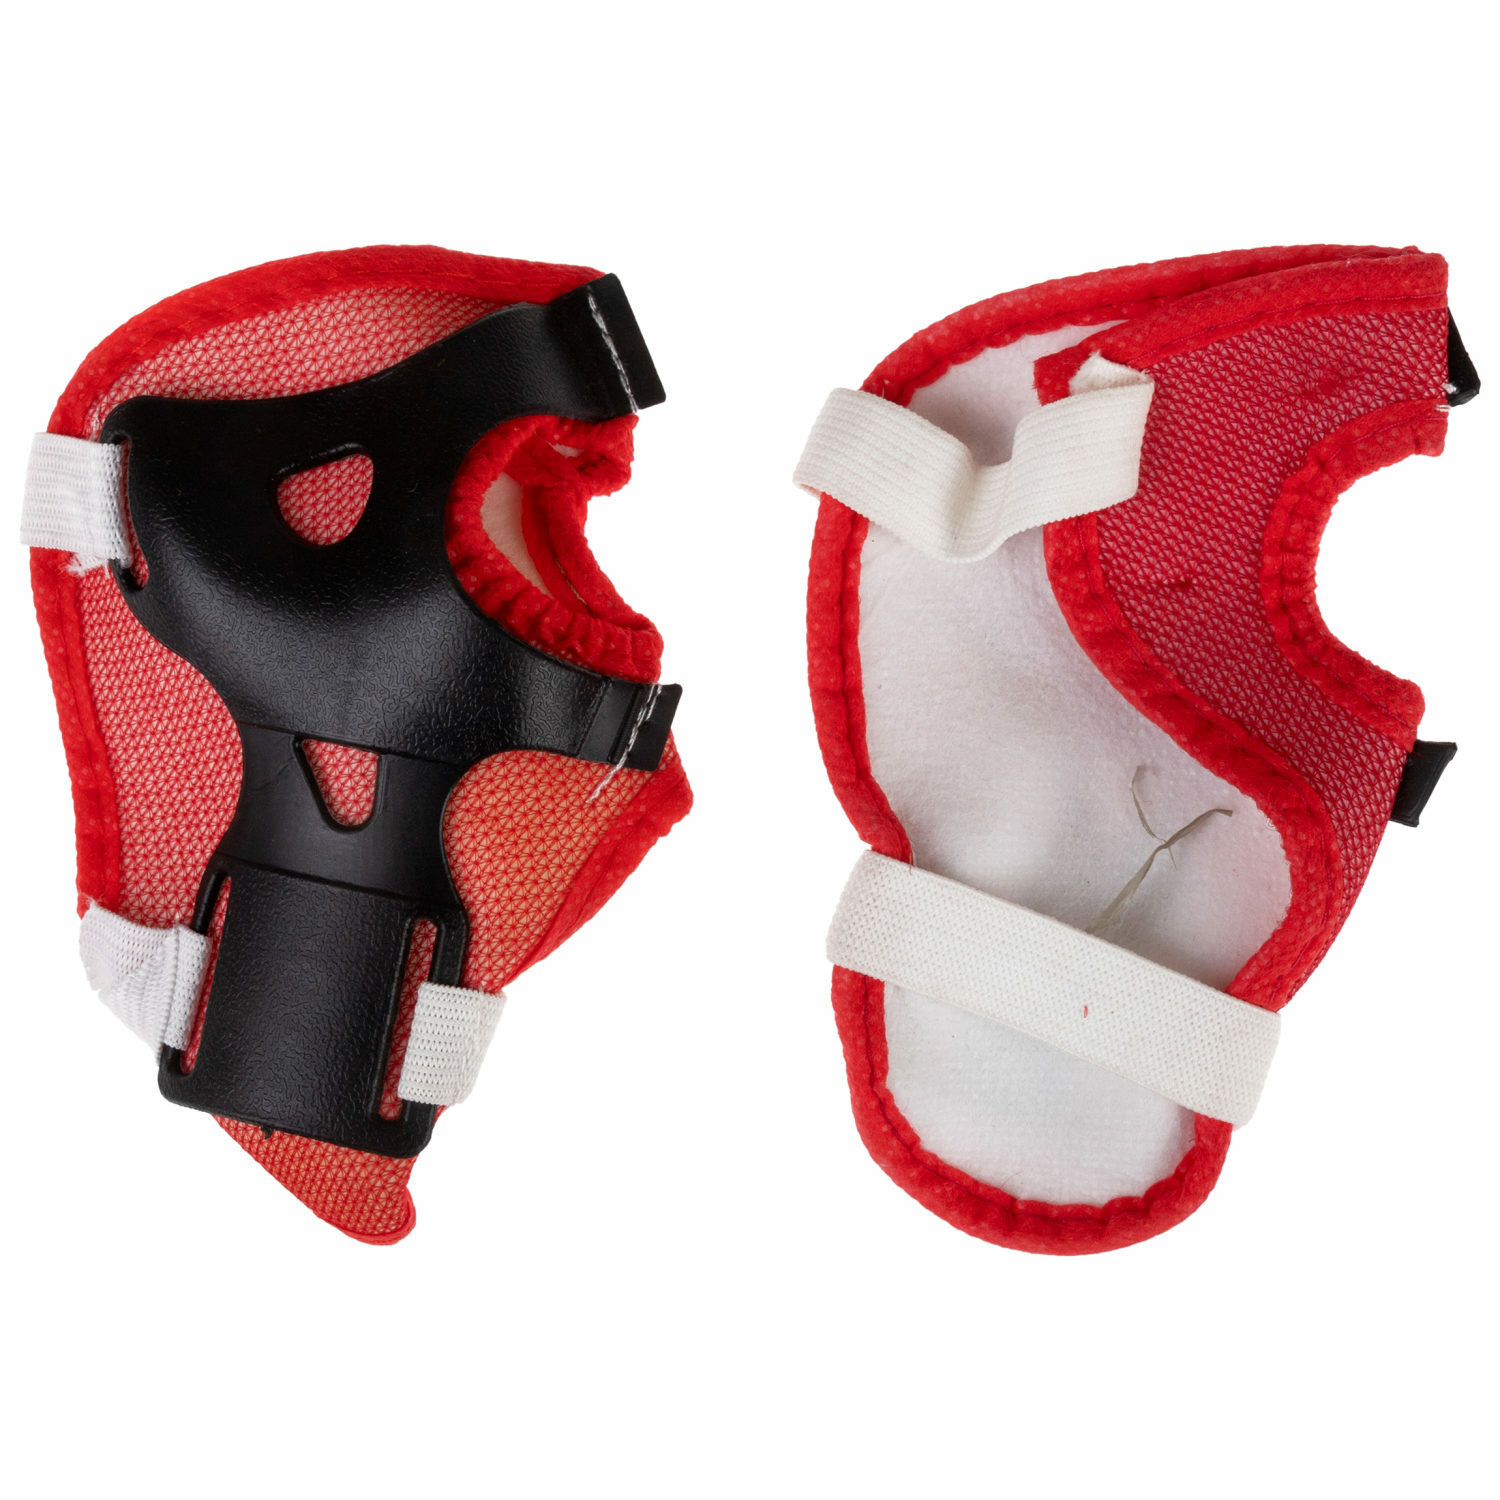 Ролики Navigator детские раздвижные 30 - 33 размер с защитой и шлемом красный - фото 15